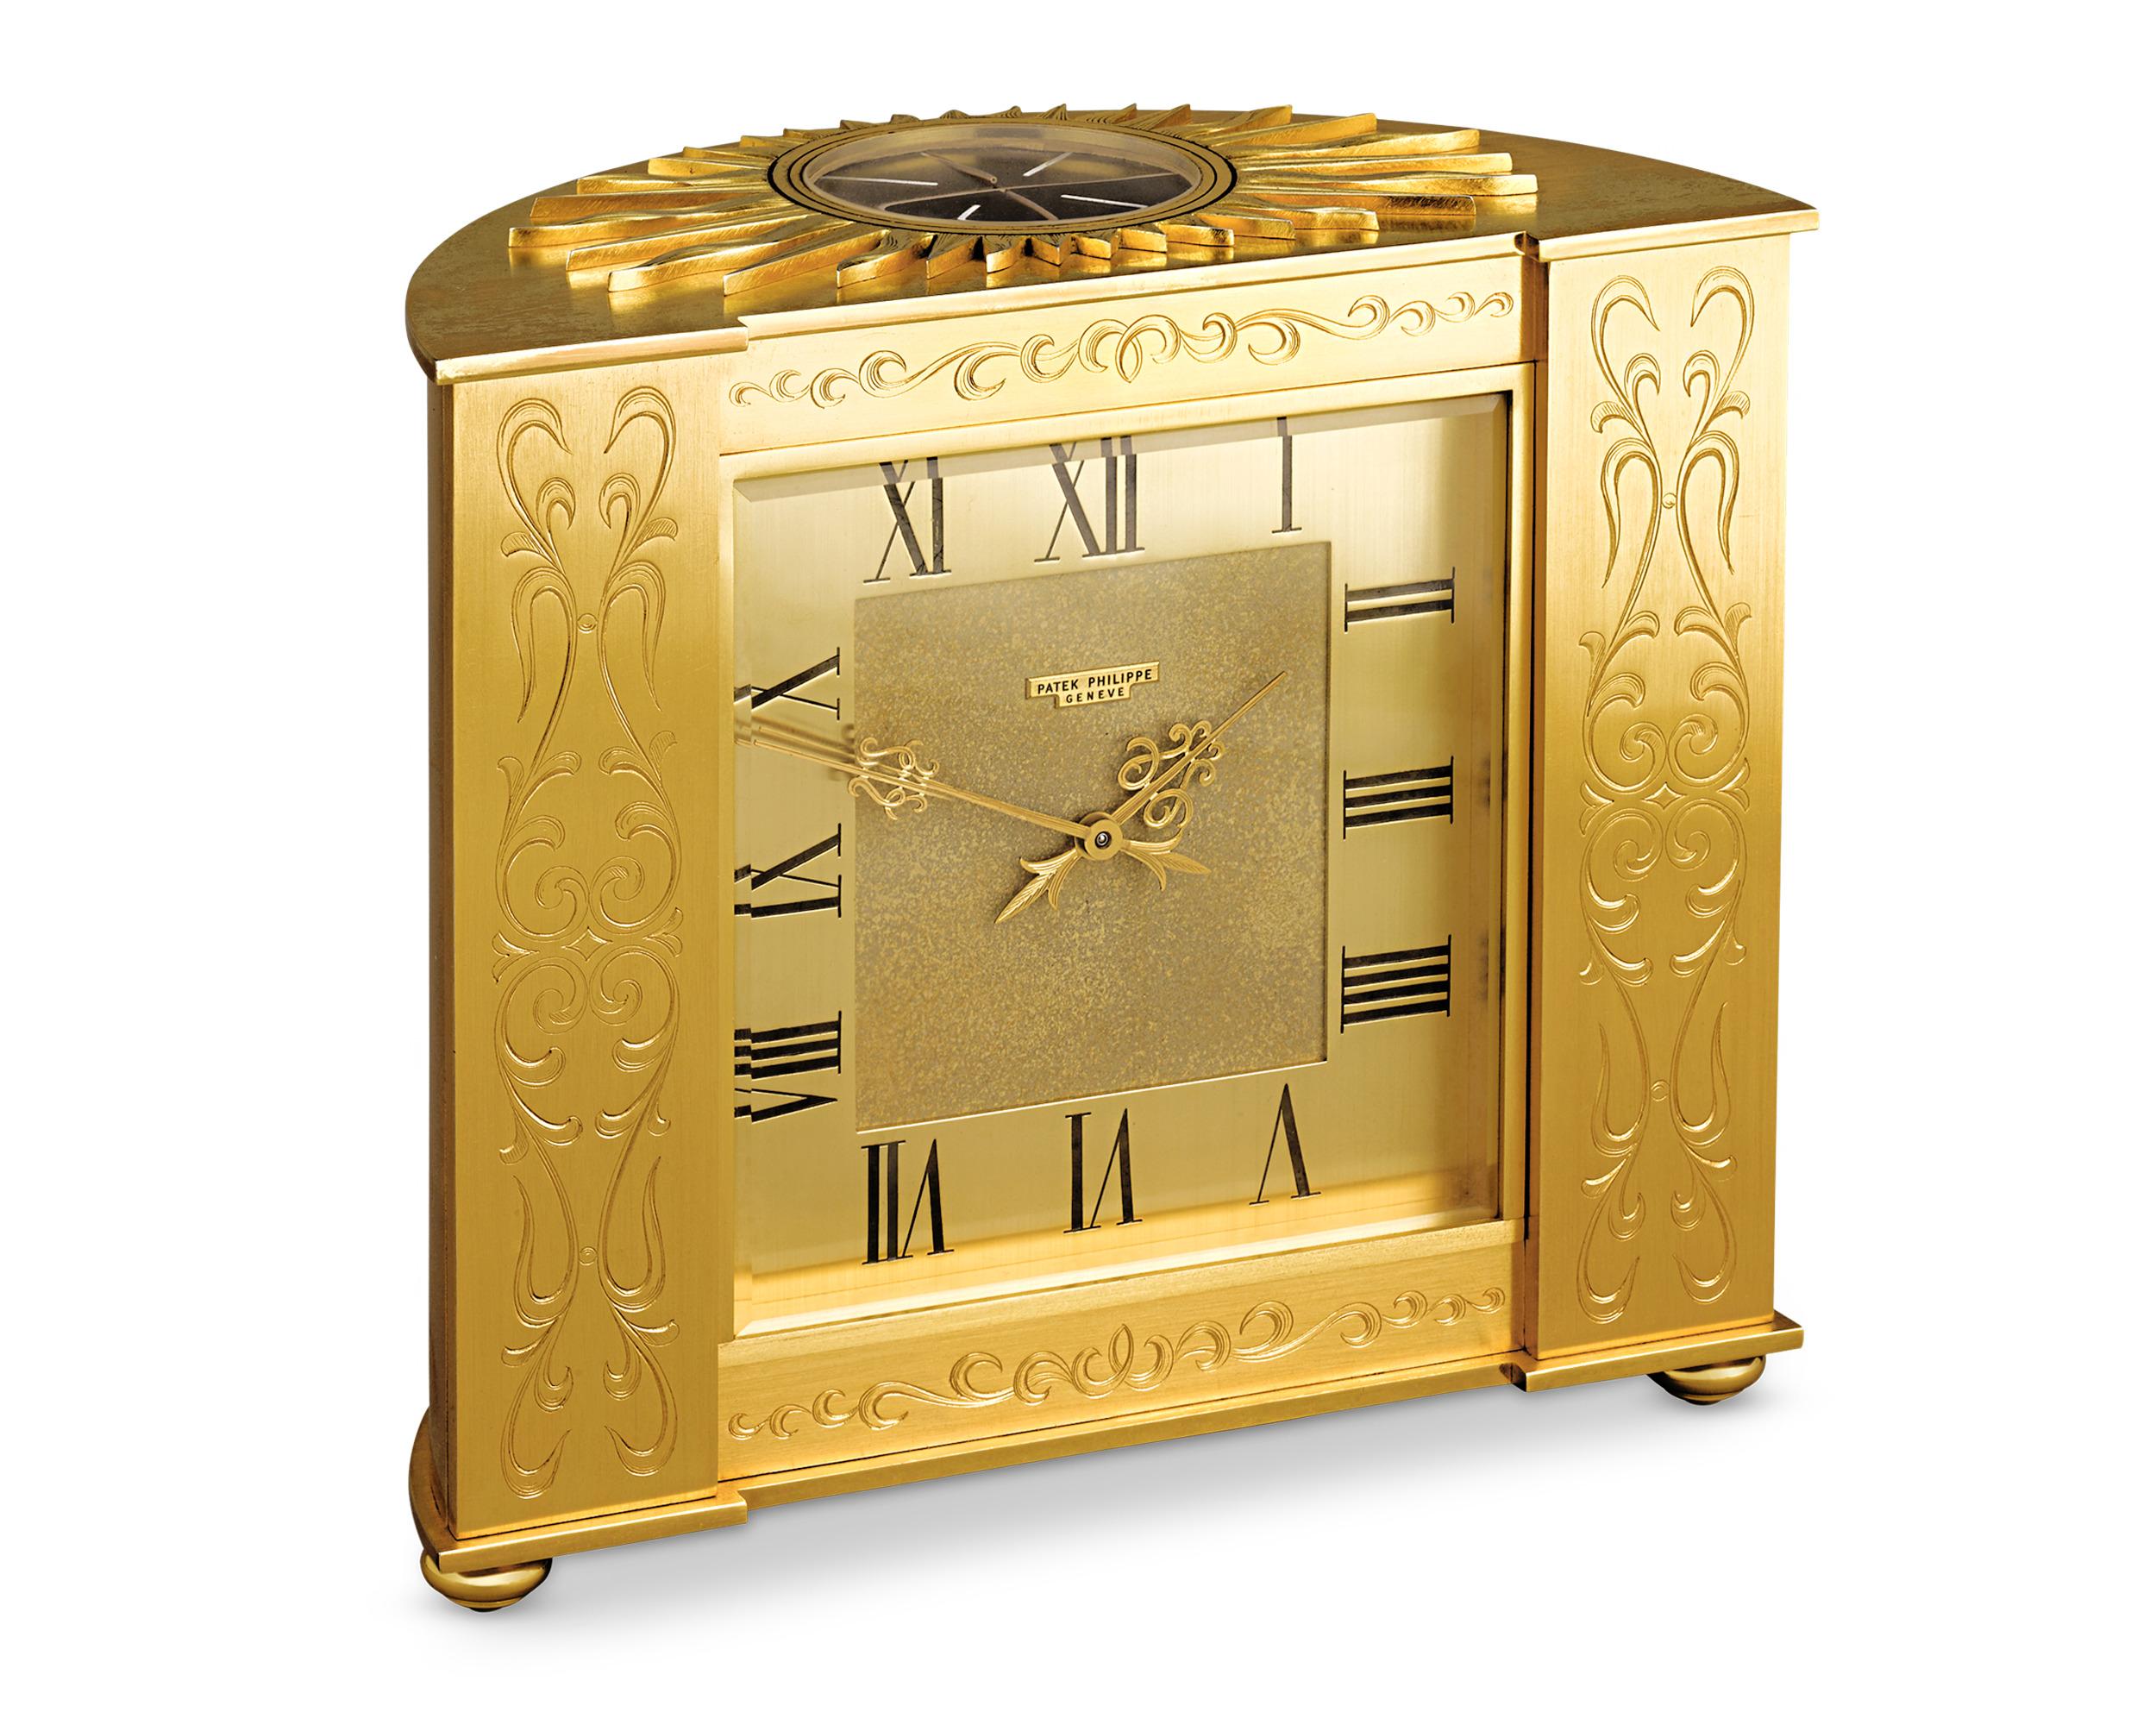 Cette rare horloge solaire de 1961 de Patek Philippe présente une esthétique inspirée de l'Empire, d'un luxe intemporel. Dotée d'un boîtier en forme de demi-lune et de motifs gravés ornementaux, cette horloge en laiton doré est surmontée d'un motif